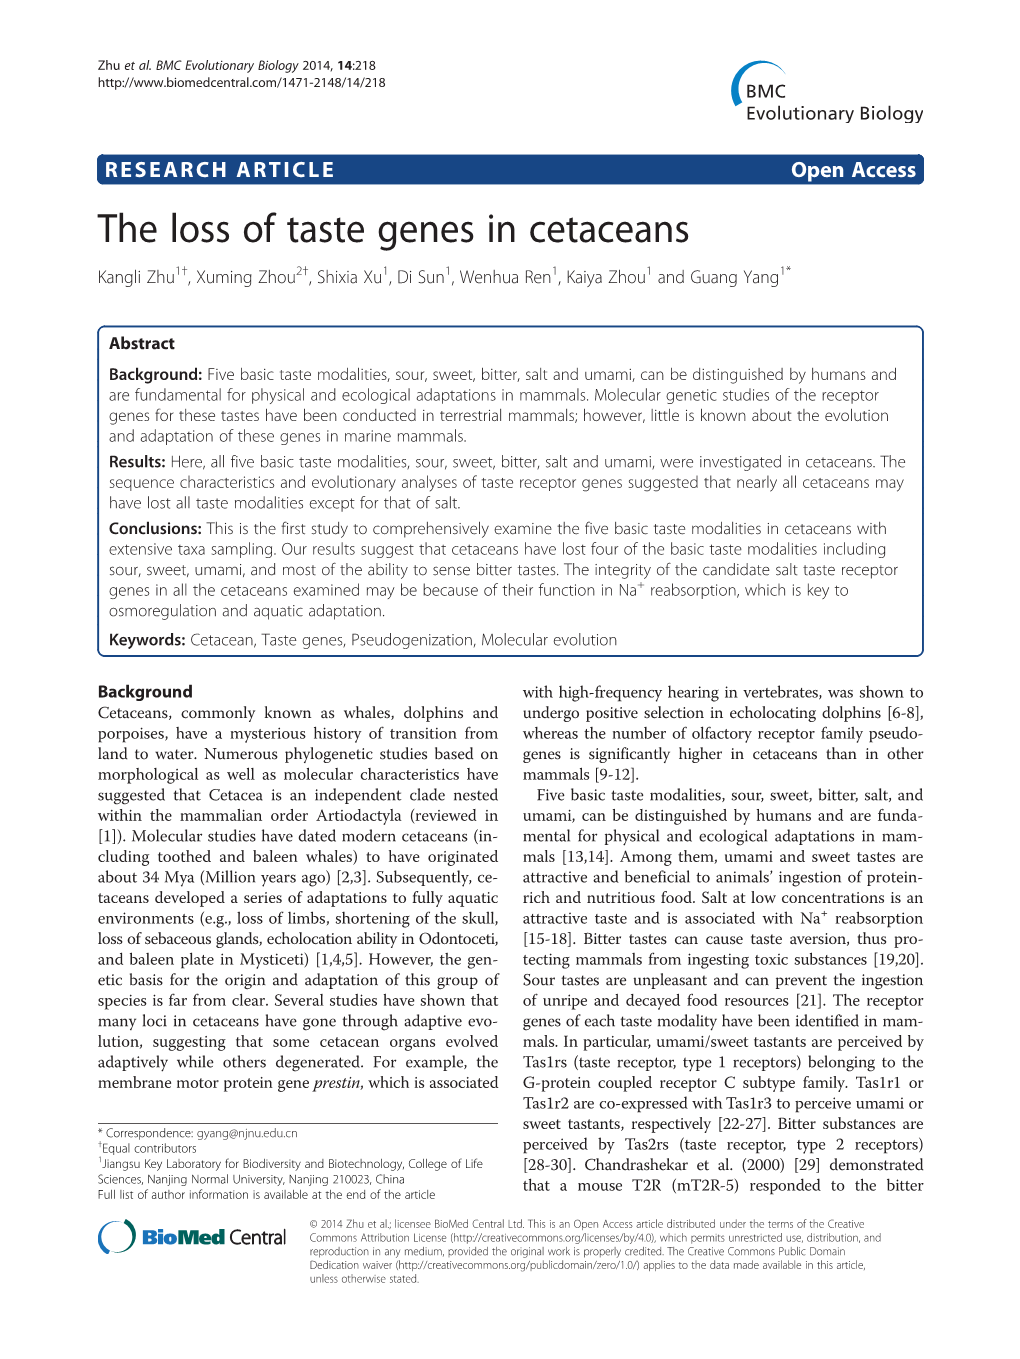 The Loss of Taste Genes in Cetaceans Kangli Zhu1†, Xuming Zhou2†, Shixia Xu1, Di Sun1, Wenhua Ren1, Kaiya Zhou1 and Guang Yang1*